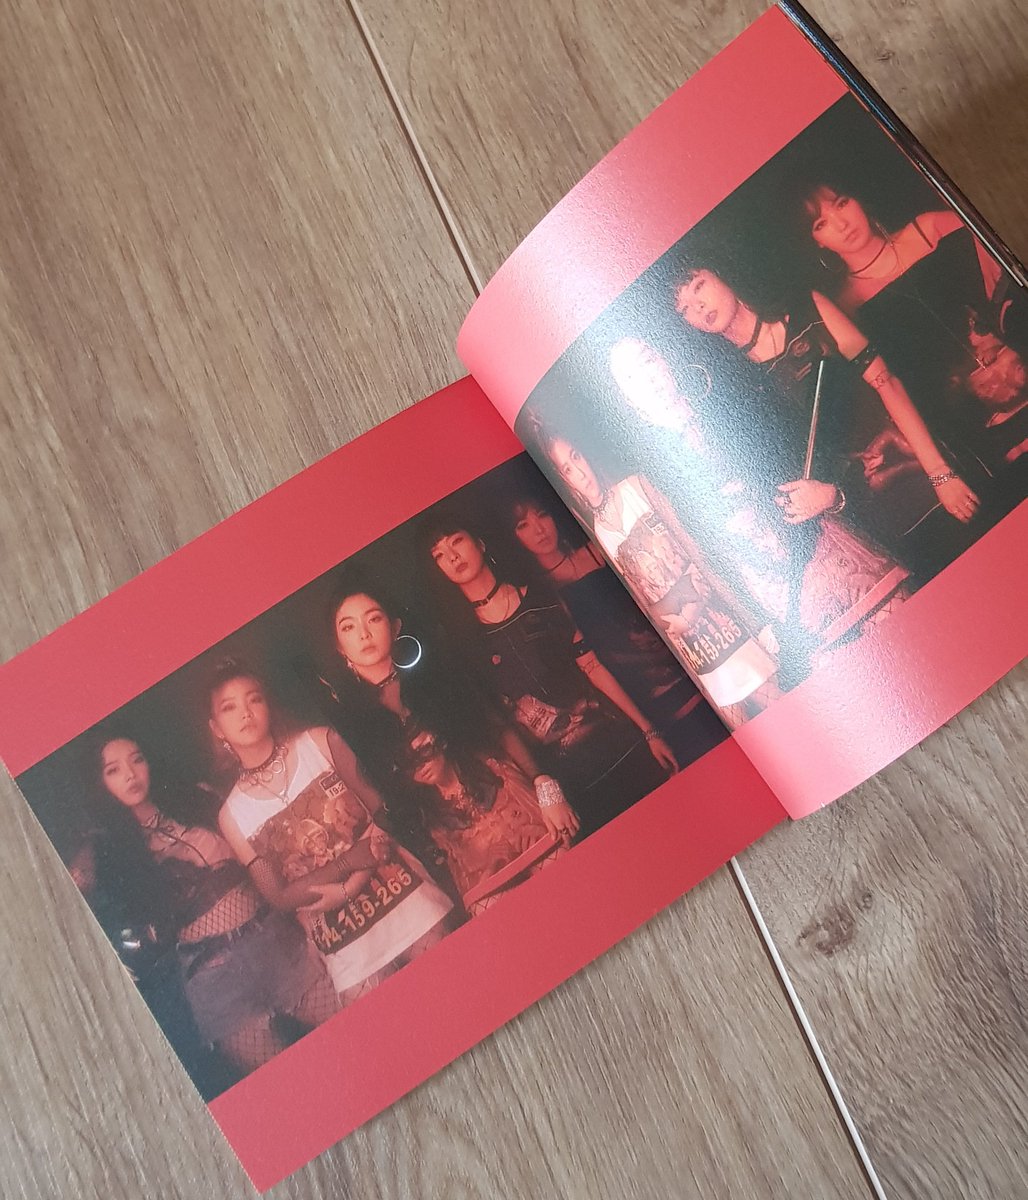 RED VELVET - The Perfect Red Velvet Photocard : Joy Favorite Song : I Just